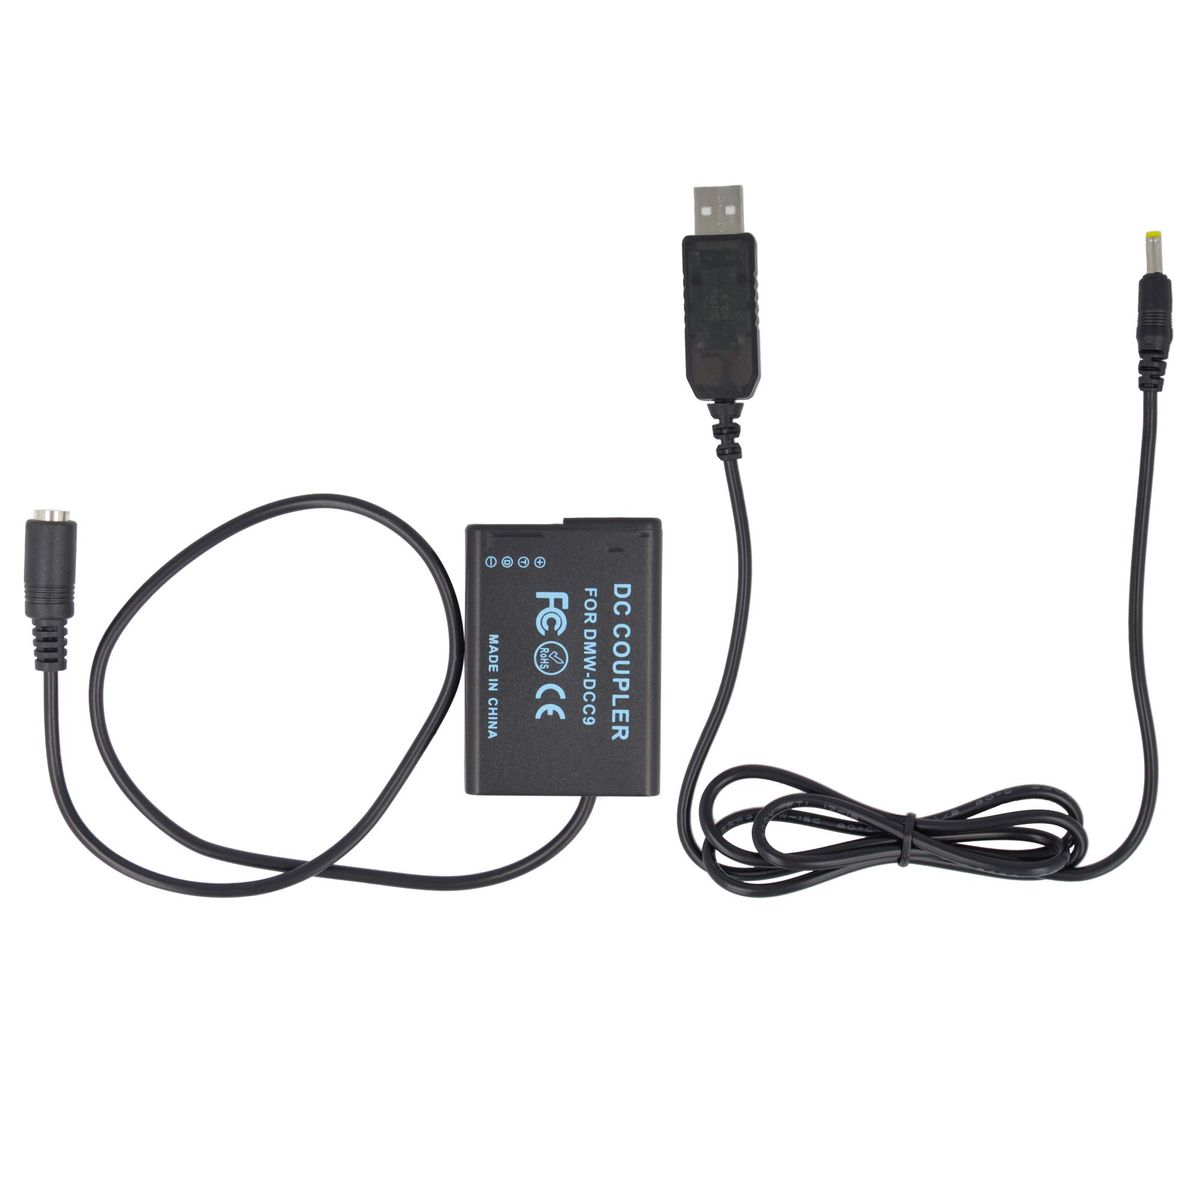 AKKU-KING USB Adapter + Panasonic, Panasonic mit Ladegerät Angabe Kuppler DCC9 kompatibel keine